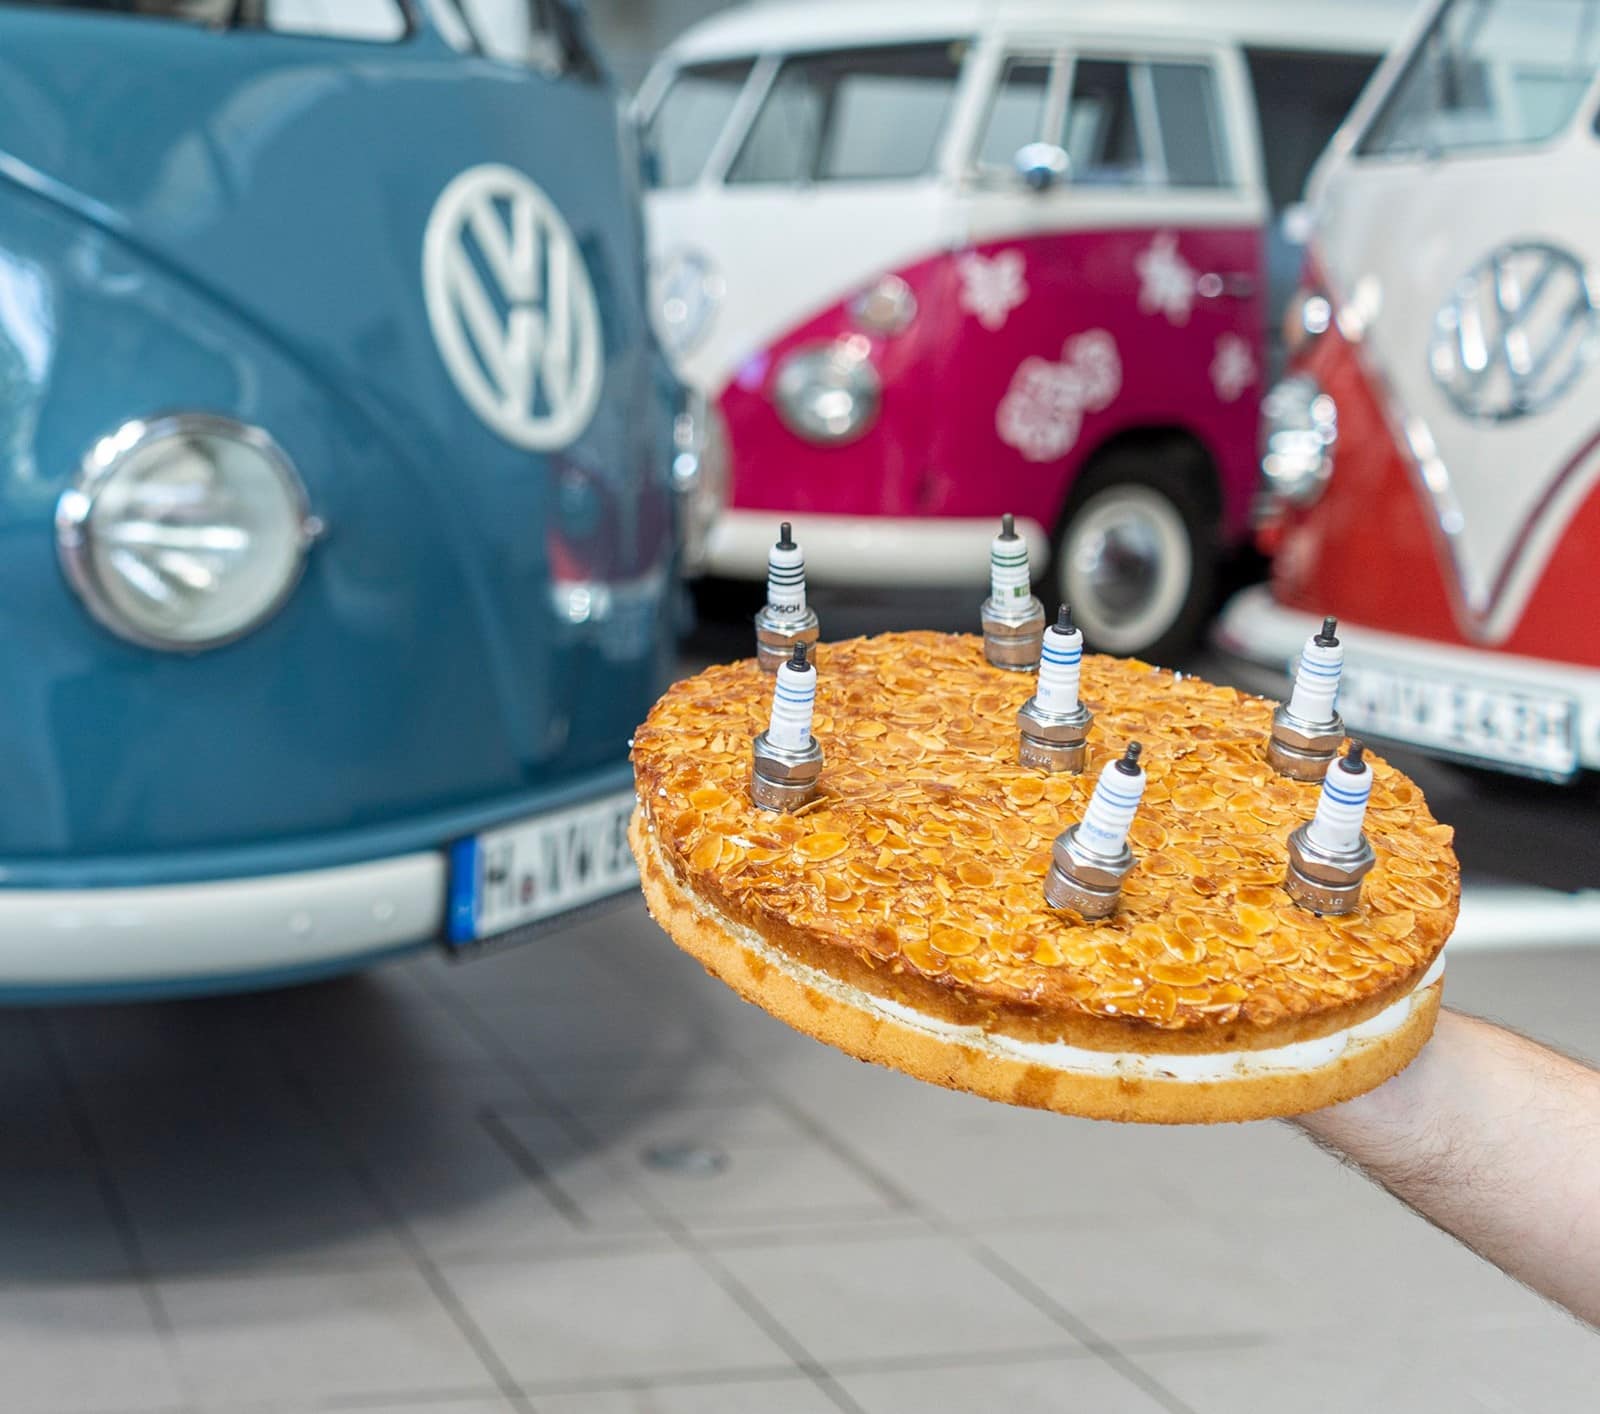 The oldest Volkswagen "van" turns 70